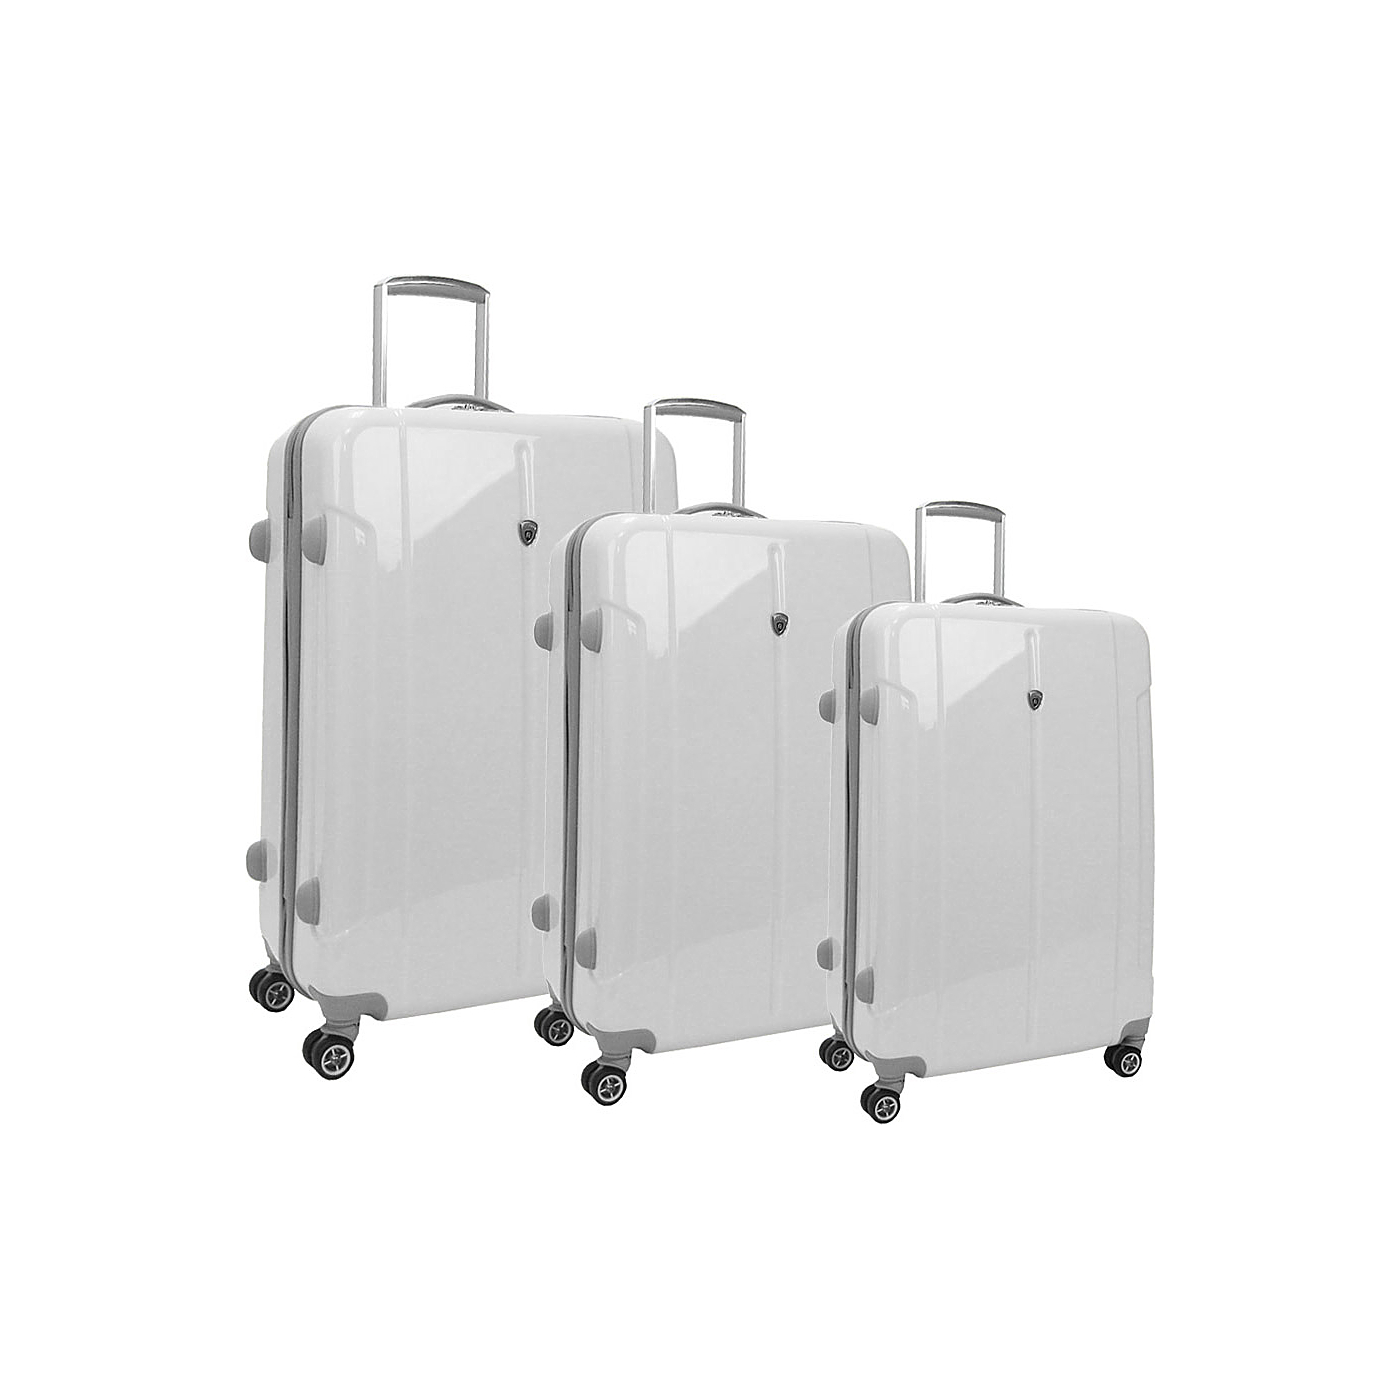 Olympia Tribune Polycarbonate 3 Piece Luggage Set